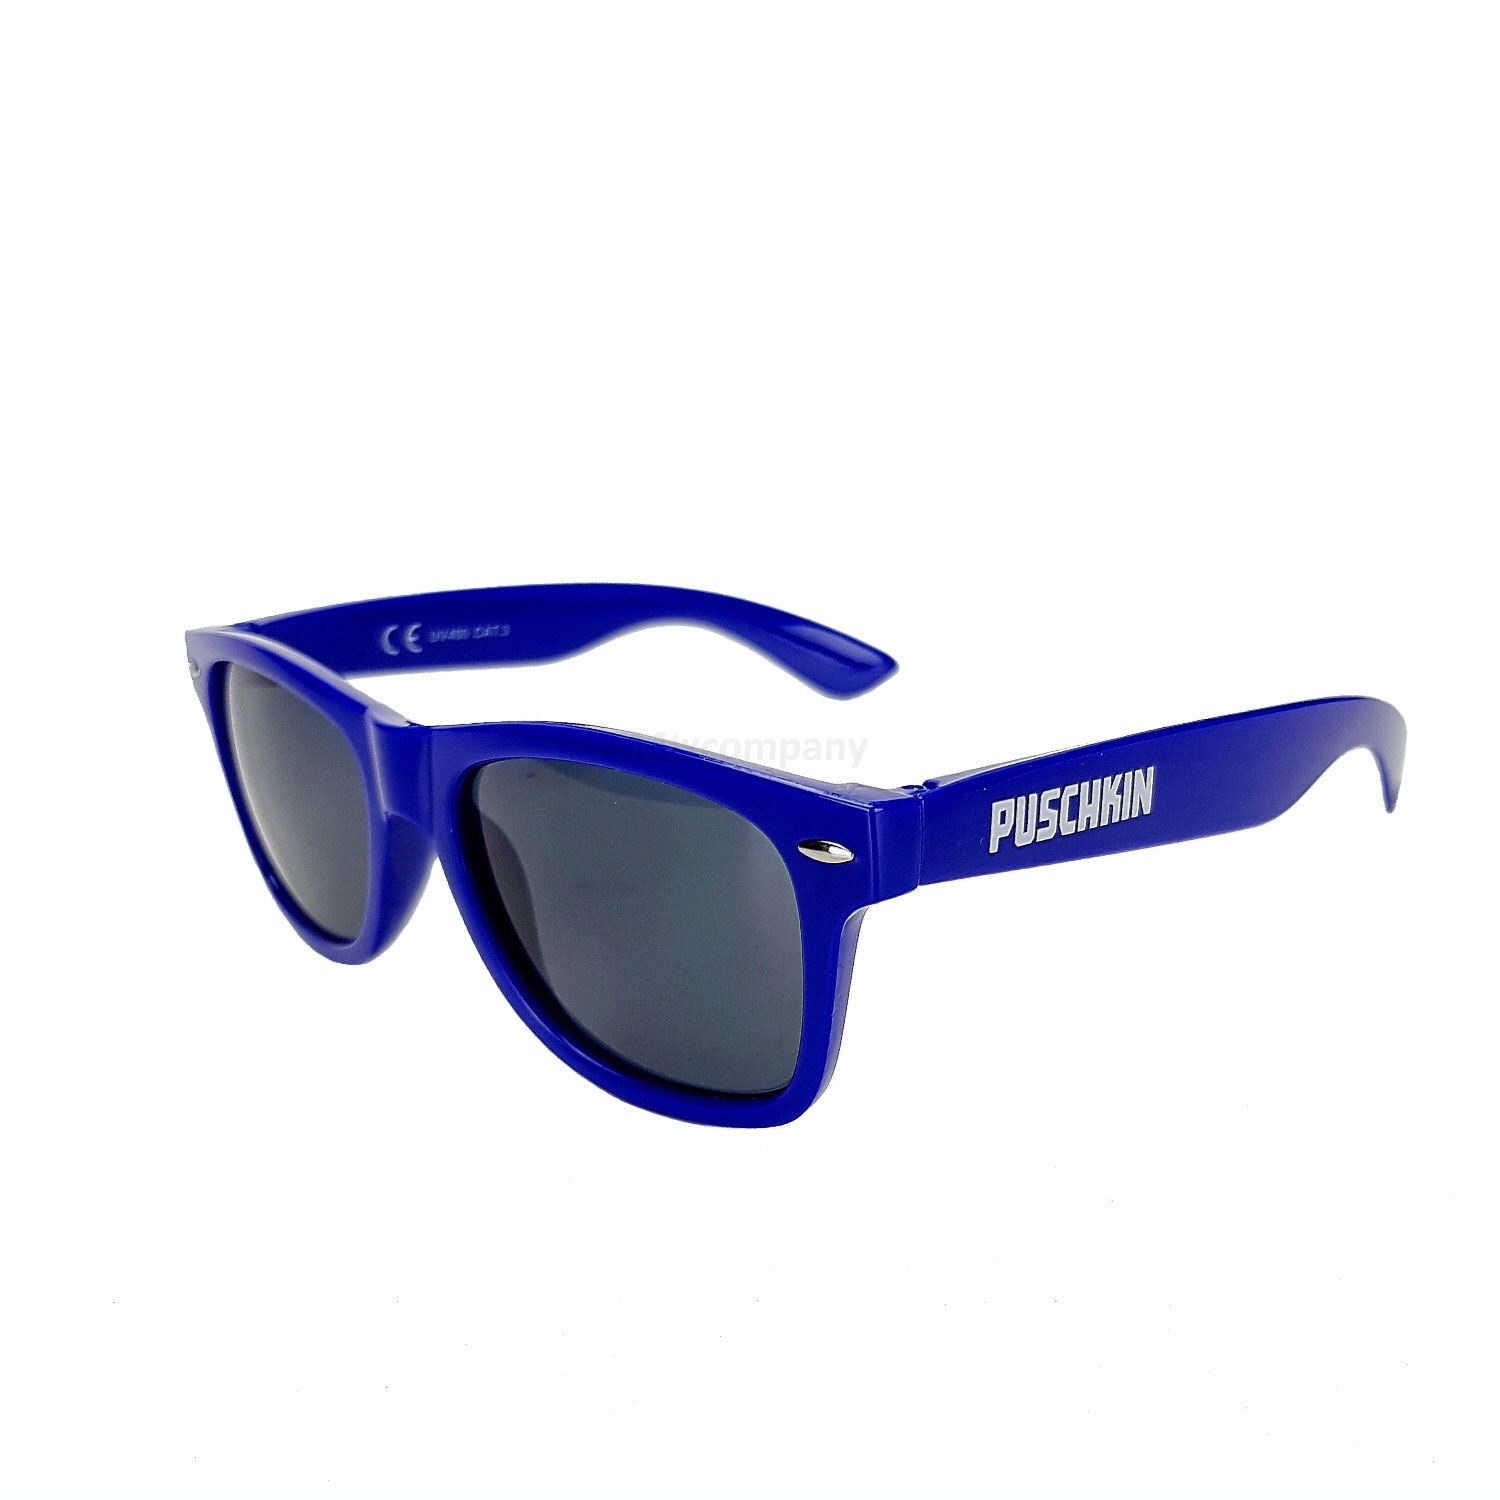 Puschkin Sonnenbrille 3x Nerd Brille mit UV 400 Schutz